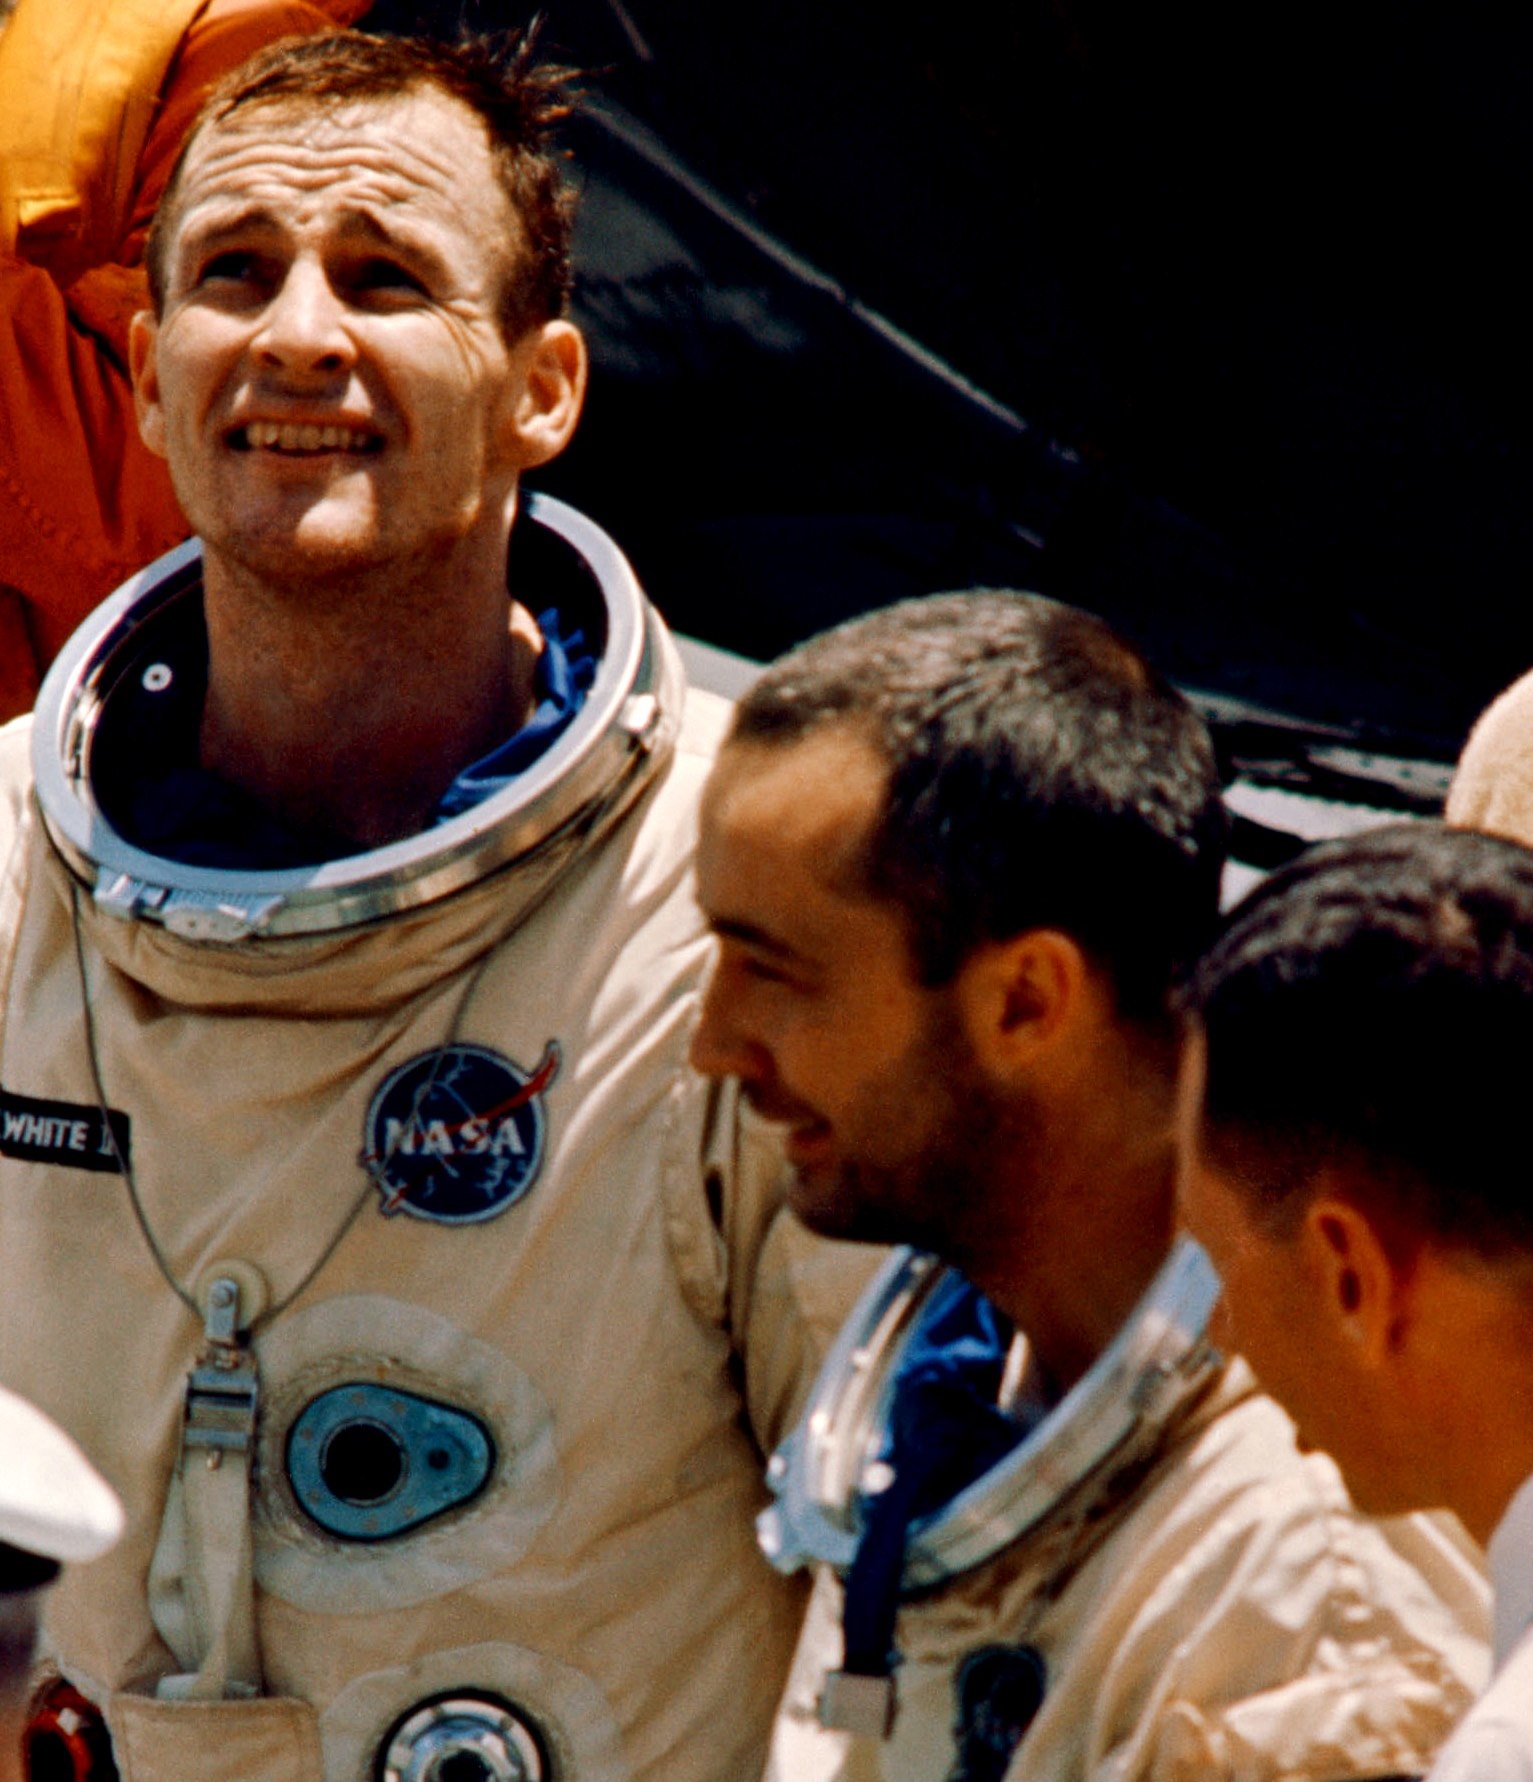 Gemini IV astronauts Ed White and Jim McDivitt